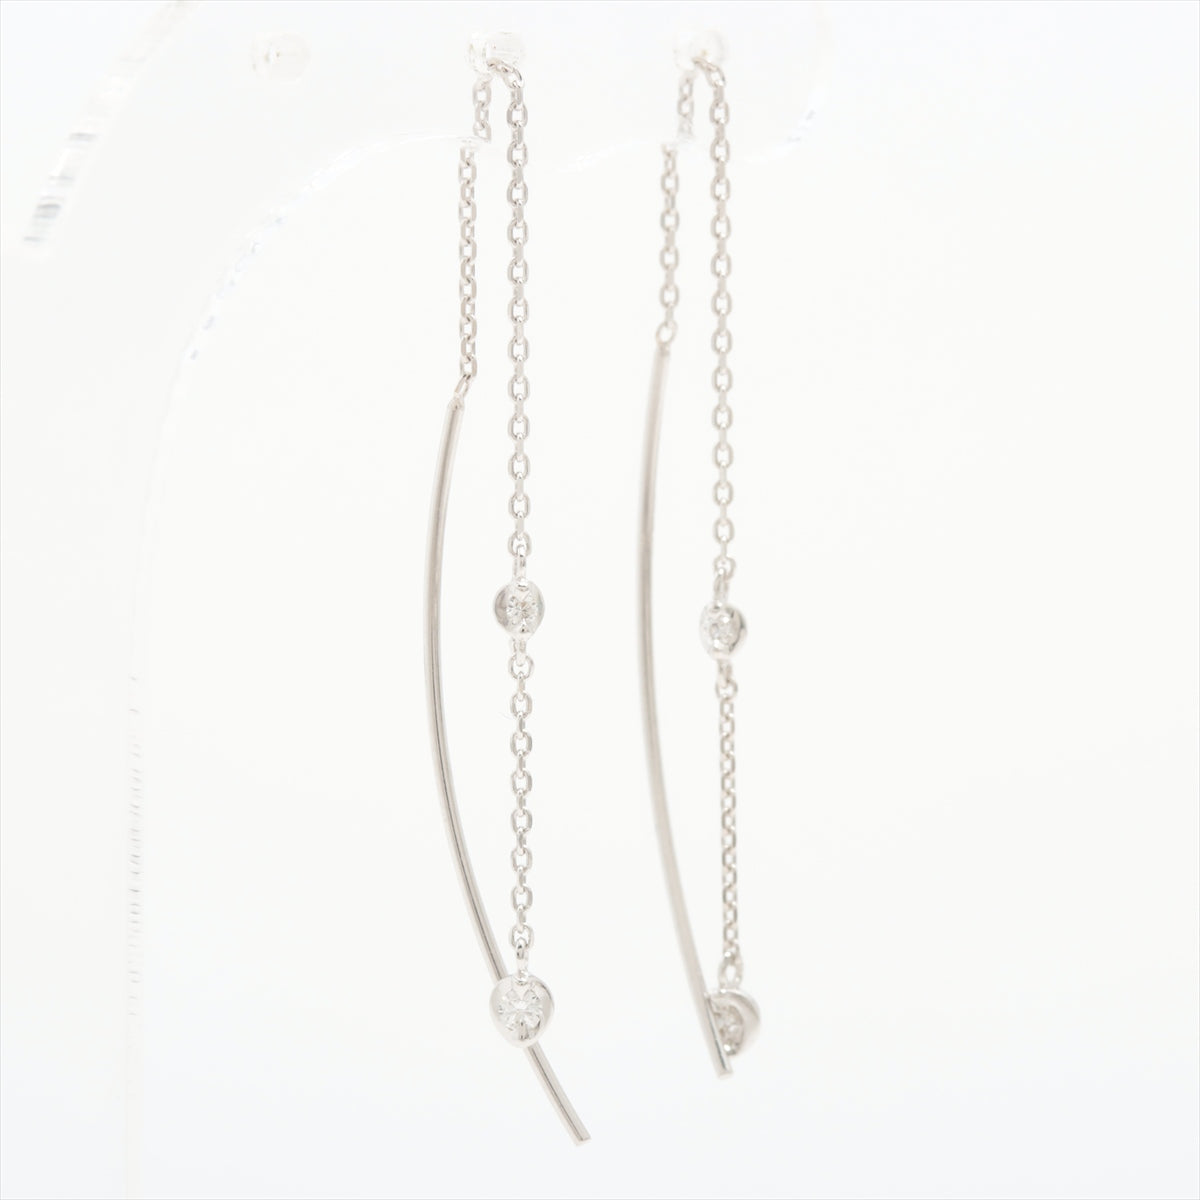 STAR JEWELRY diamond Piercing jewelry K18(WG) 0.8g 0.02 0.02